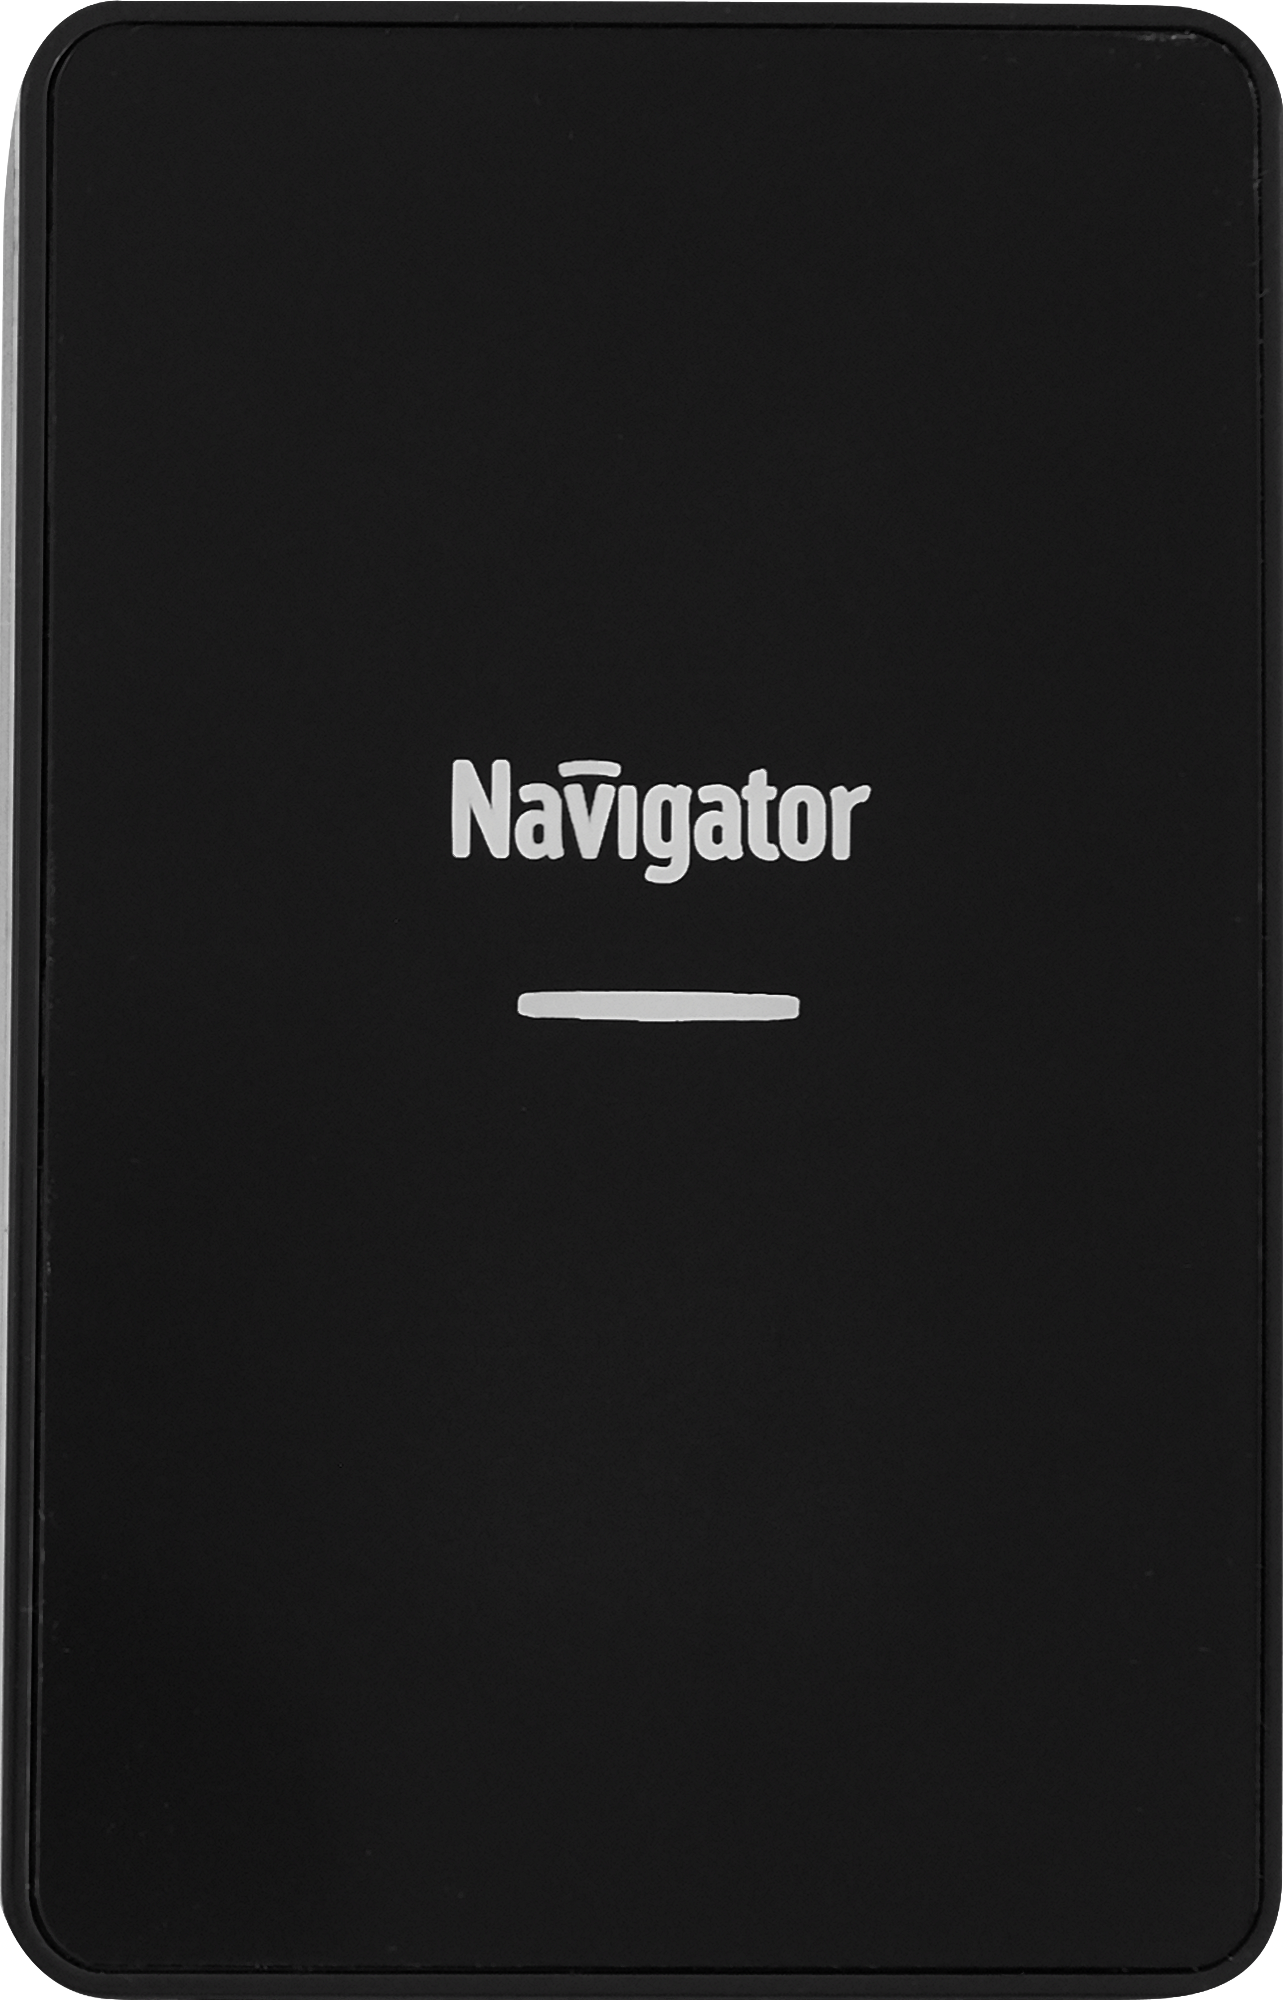 Дверной звонок беспроводной Navigator 80 512 36 мелодий цвет черный